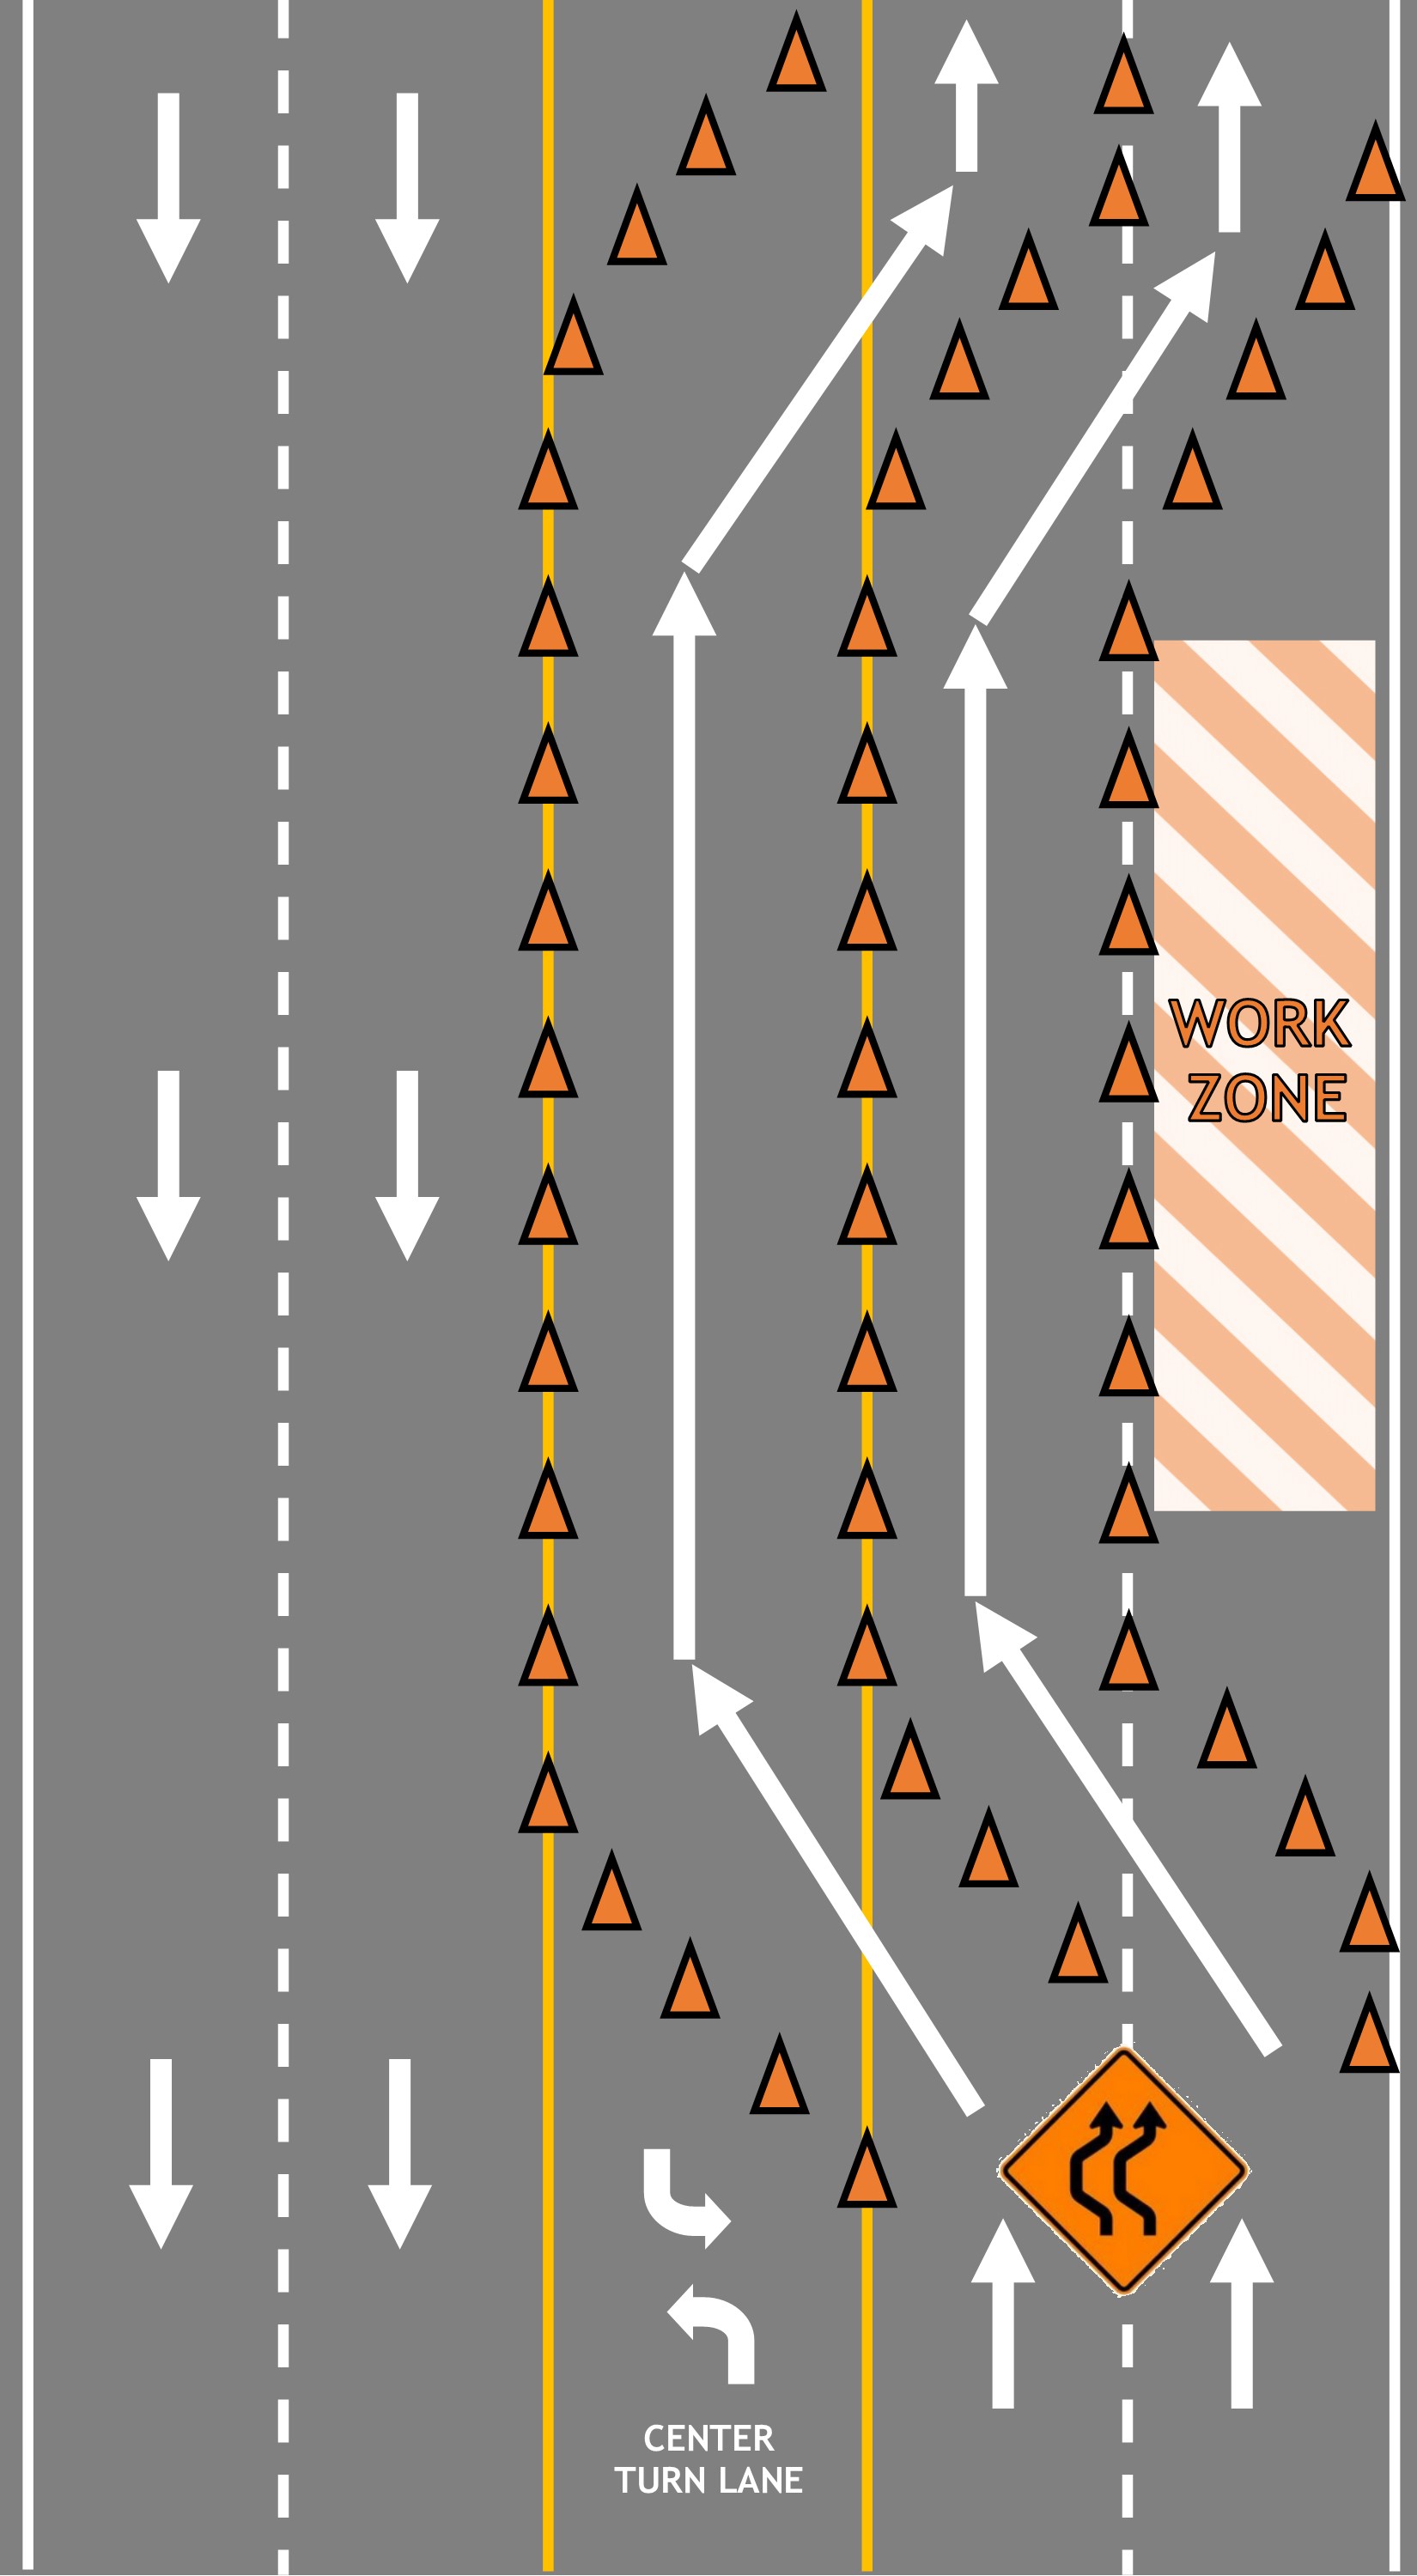 Lane Shift Diagram.jpg detail image